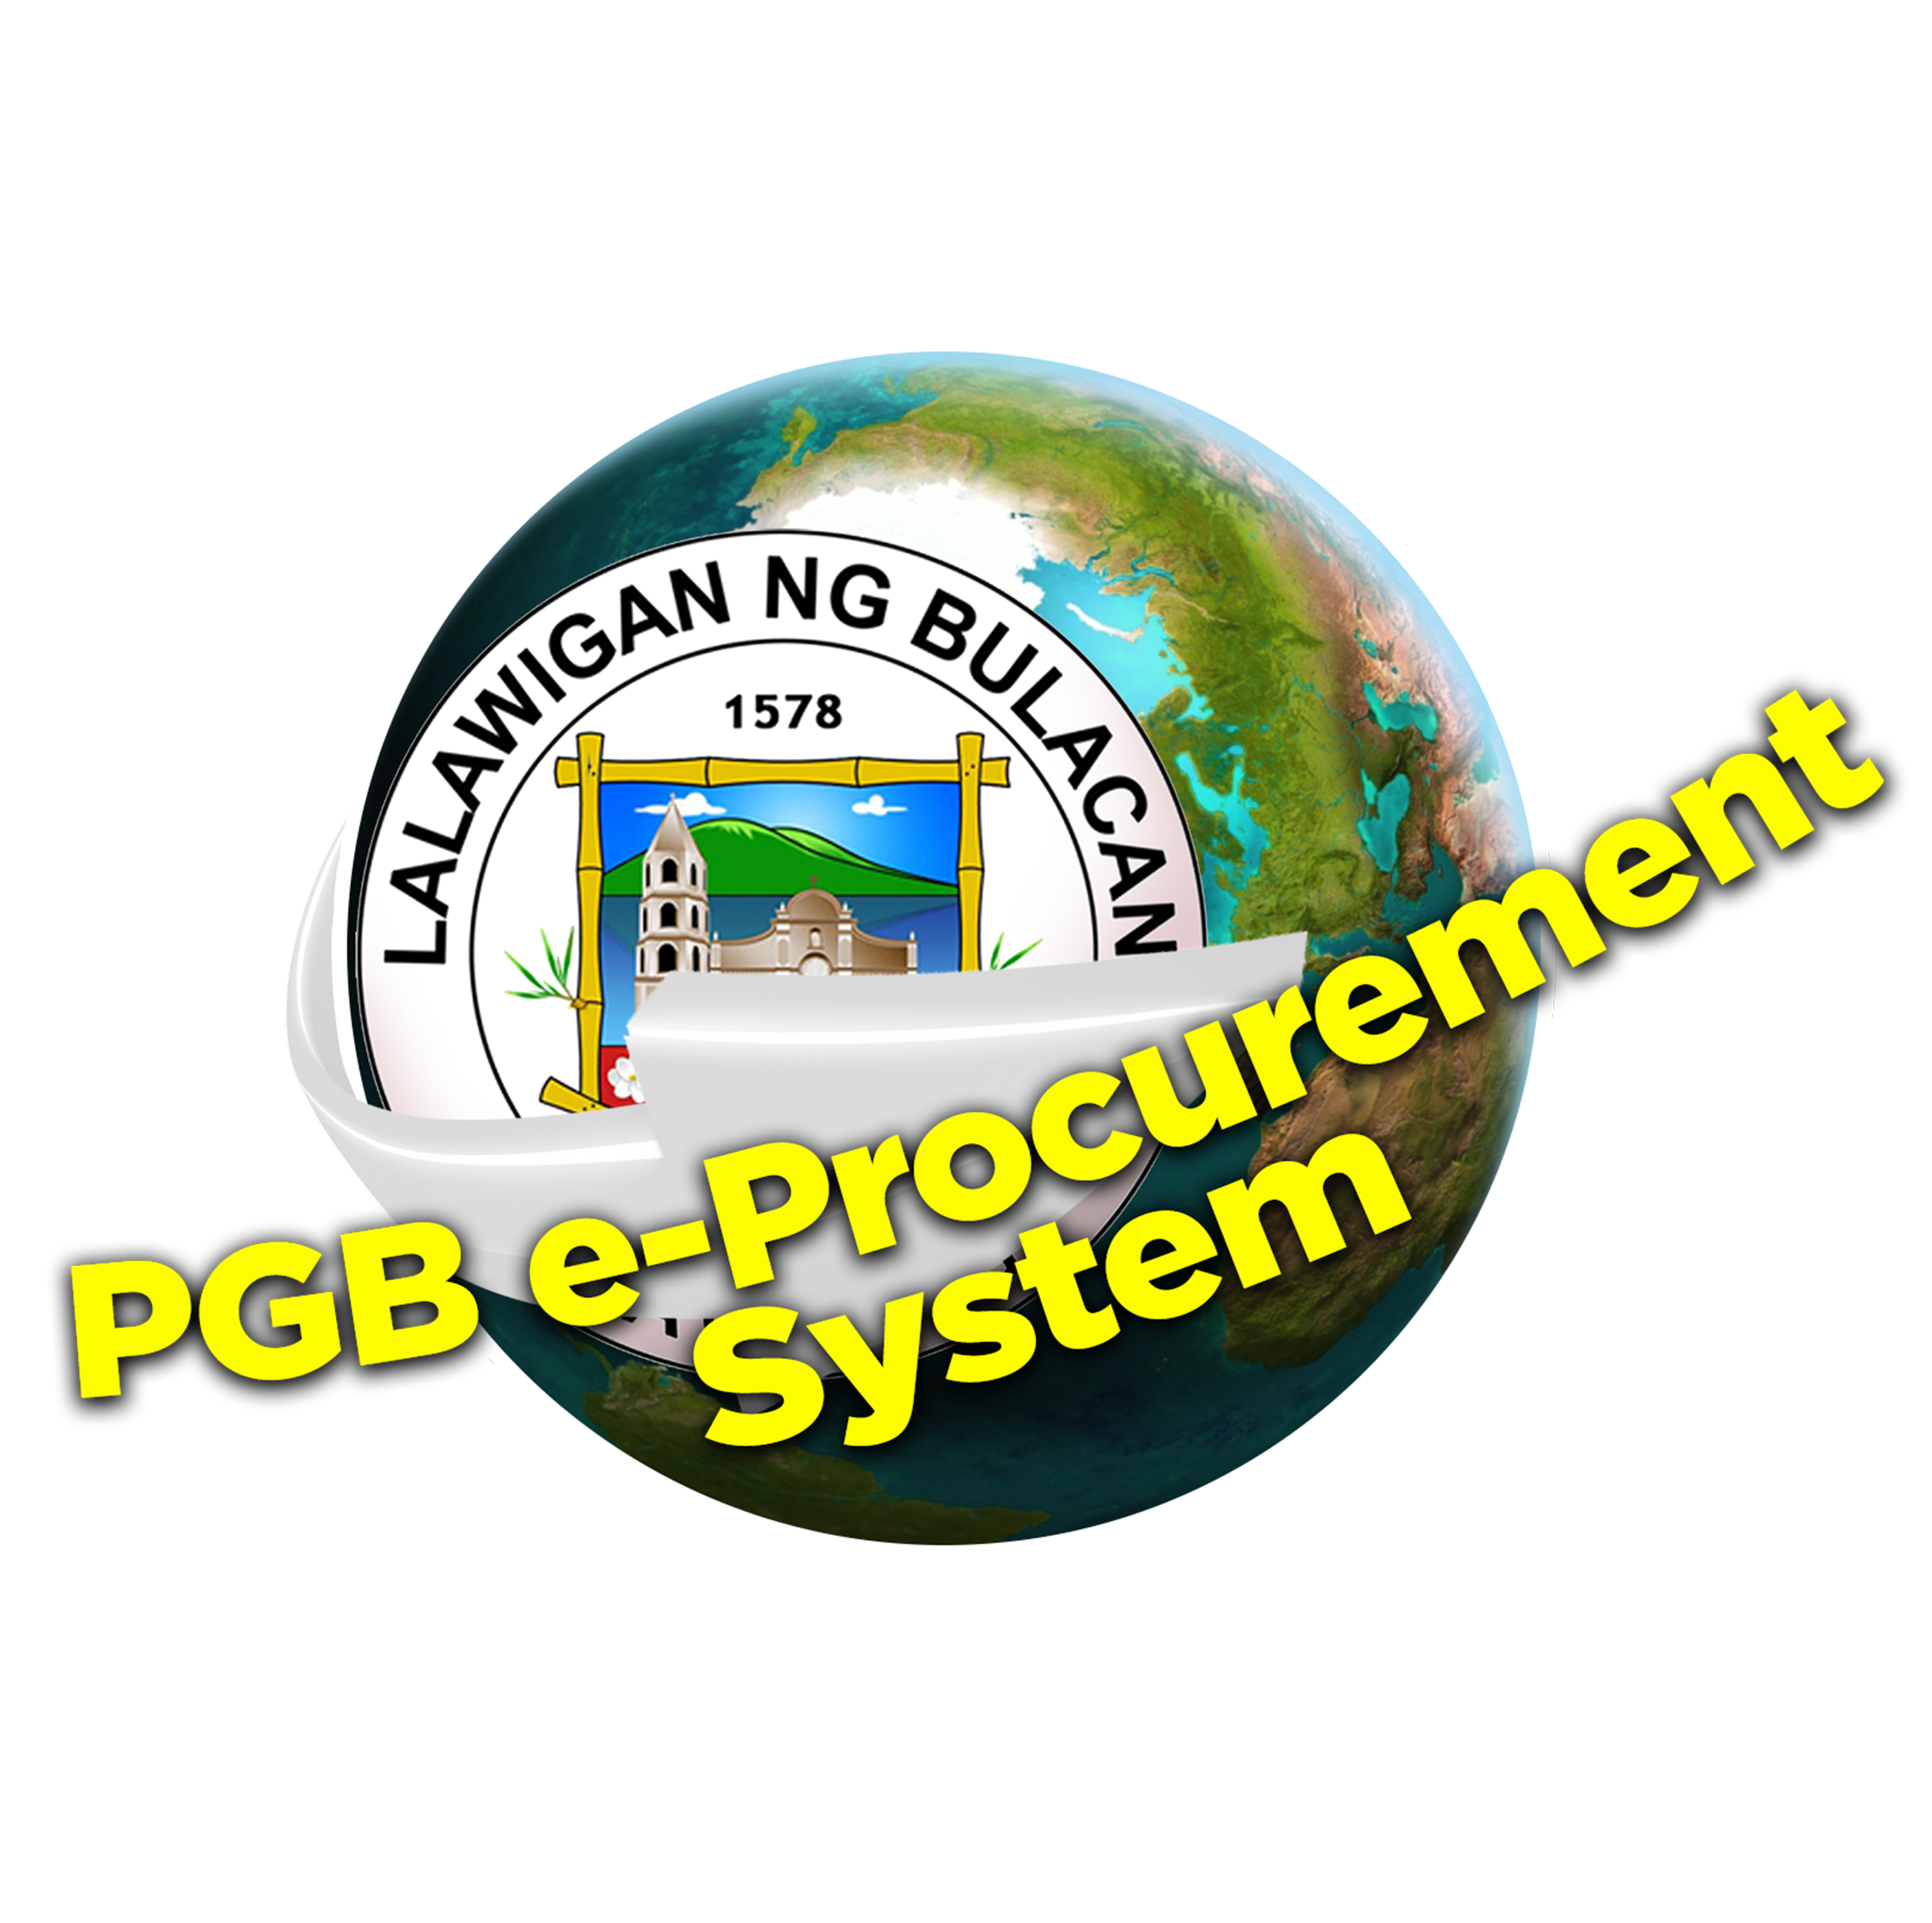 pgb eproc logo